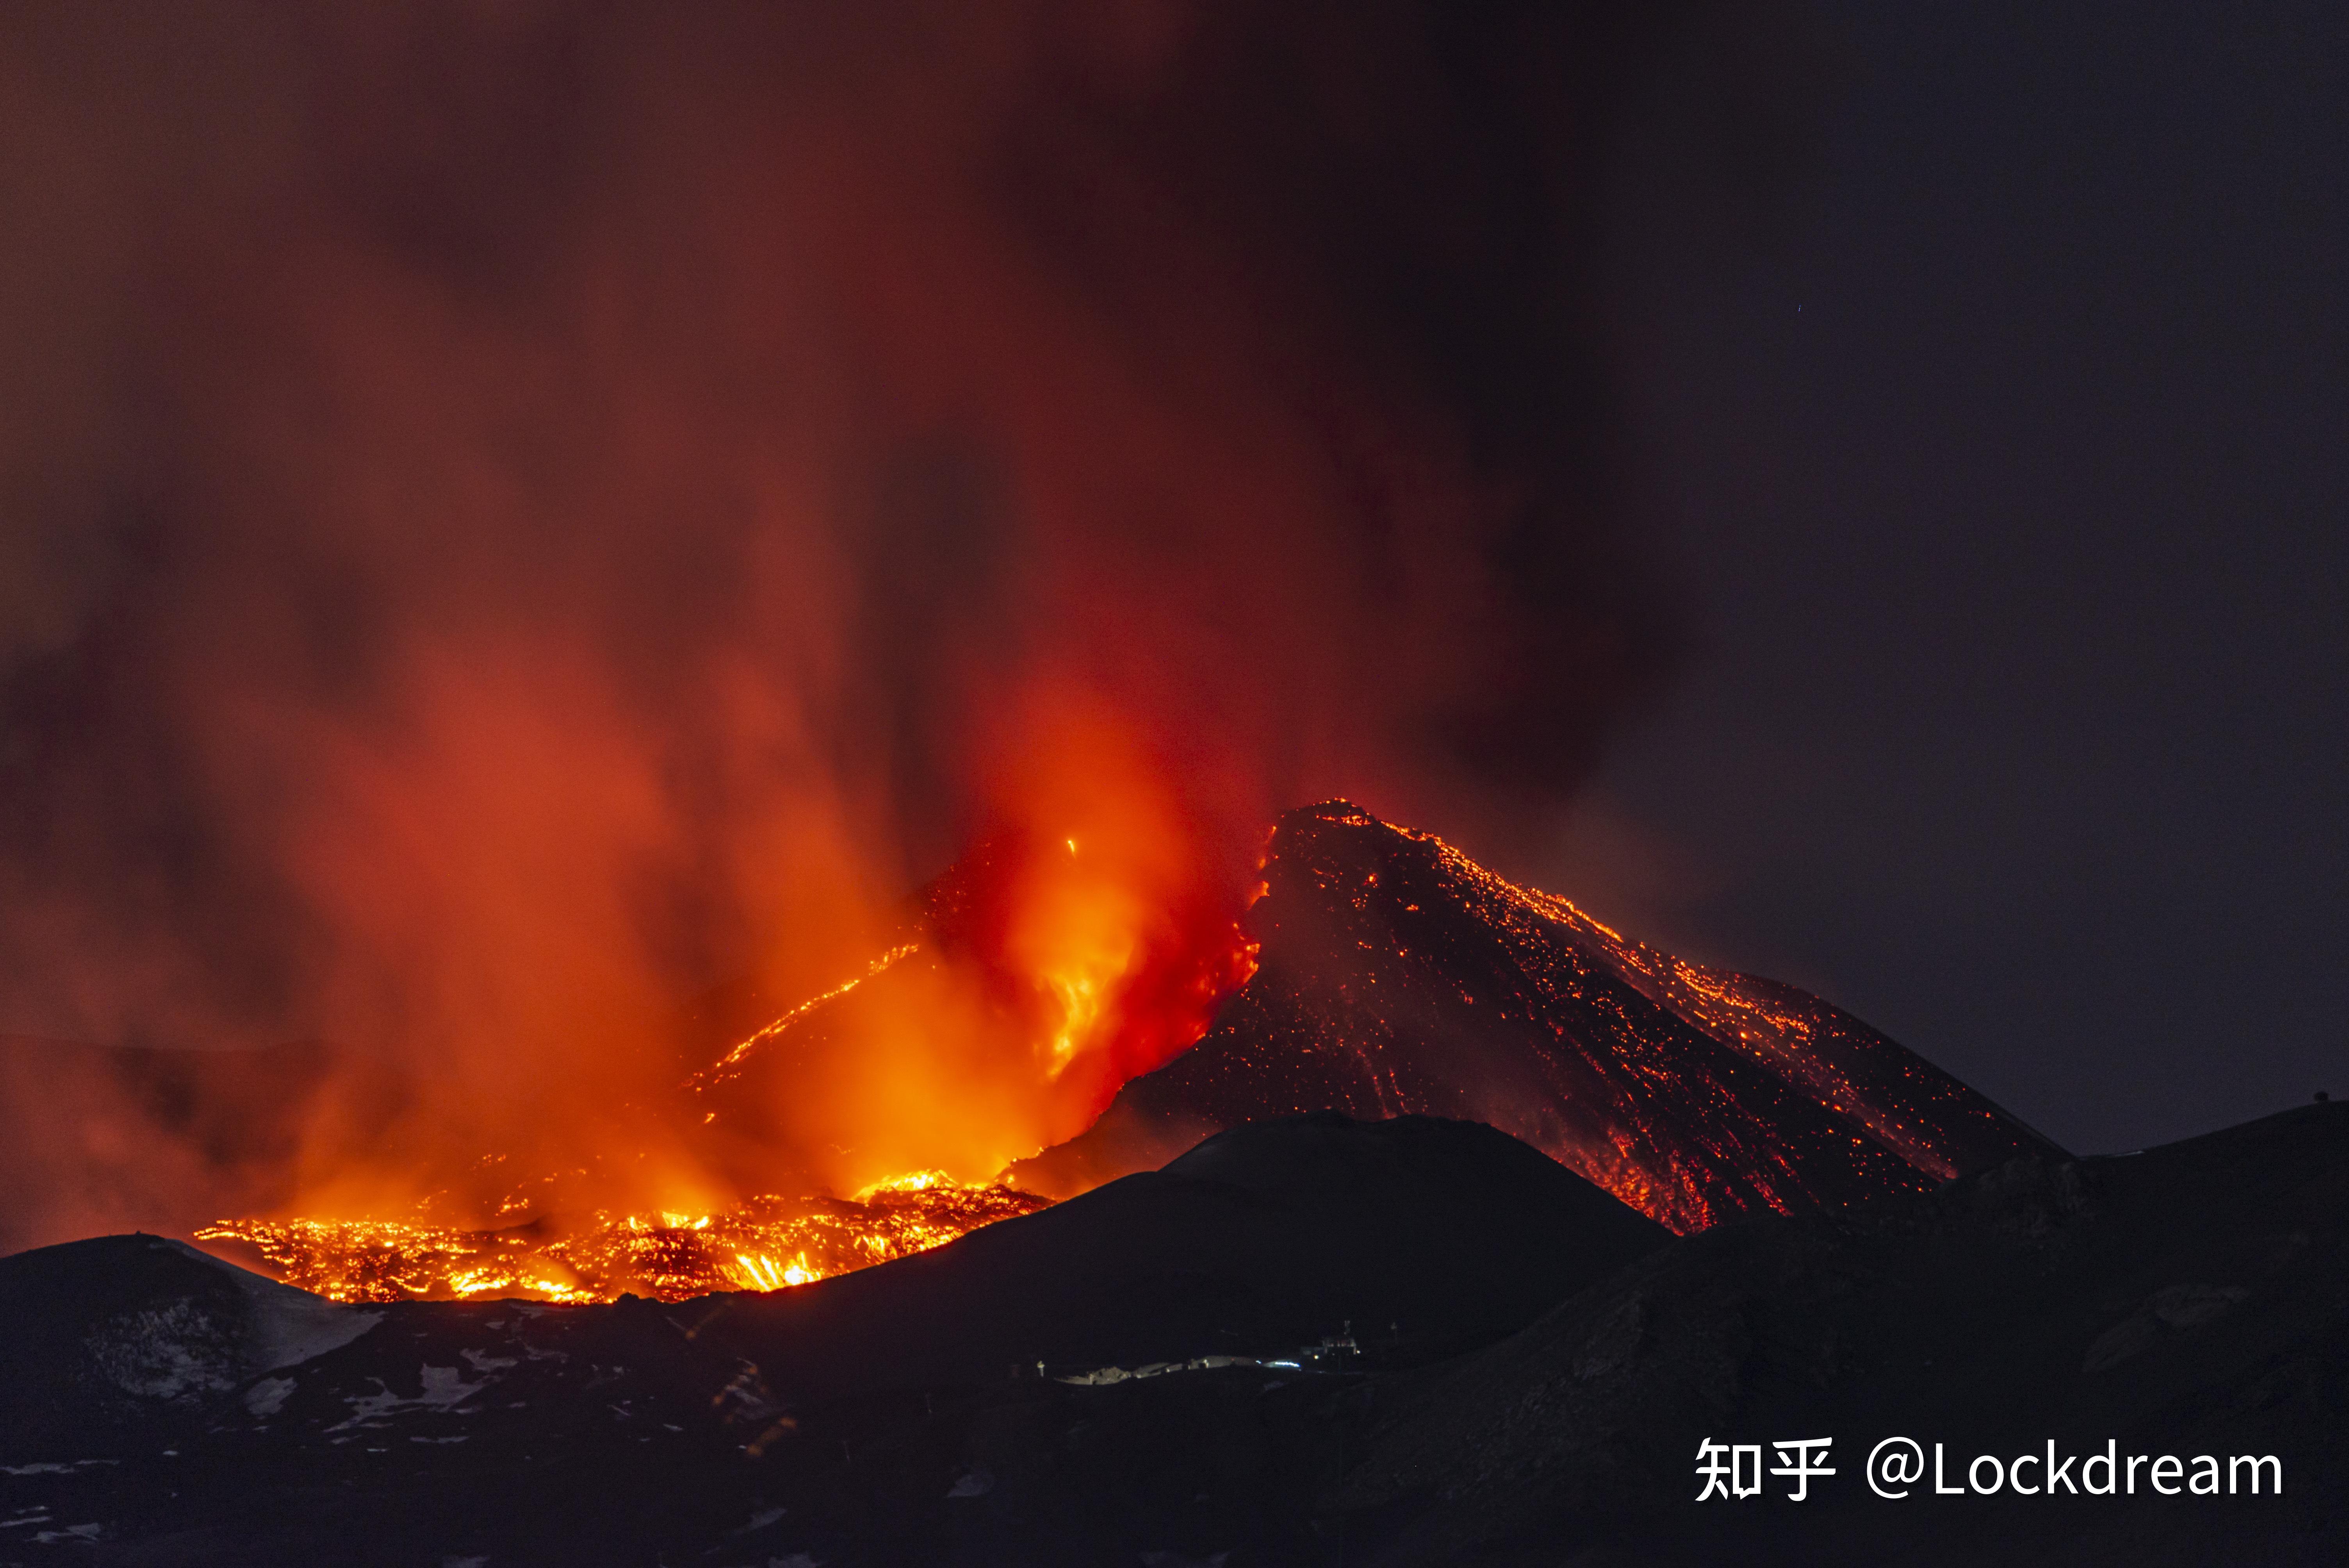 意大利火山喷发烟柱高达10千米